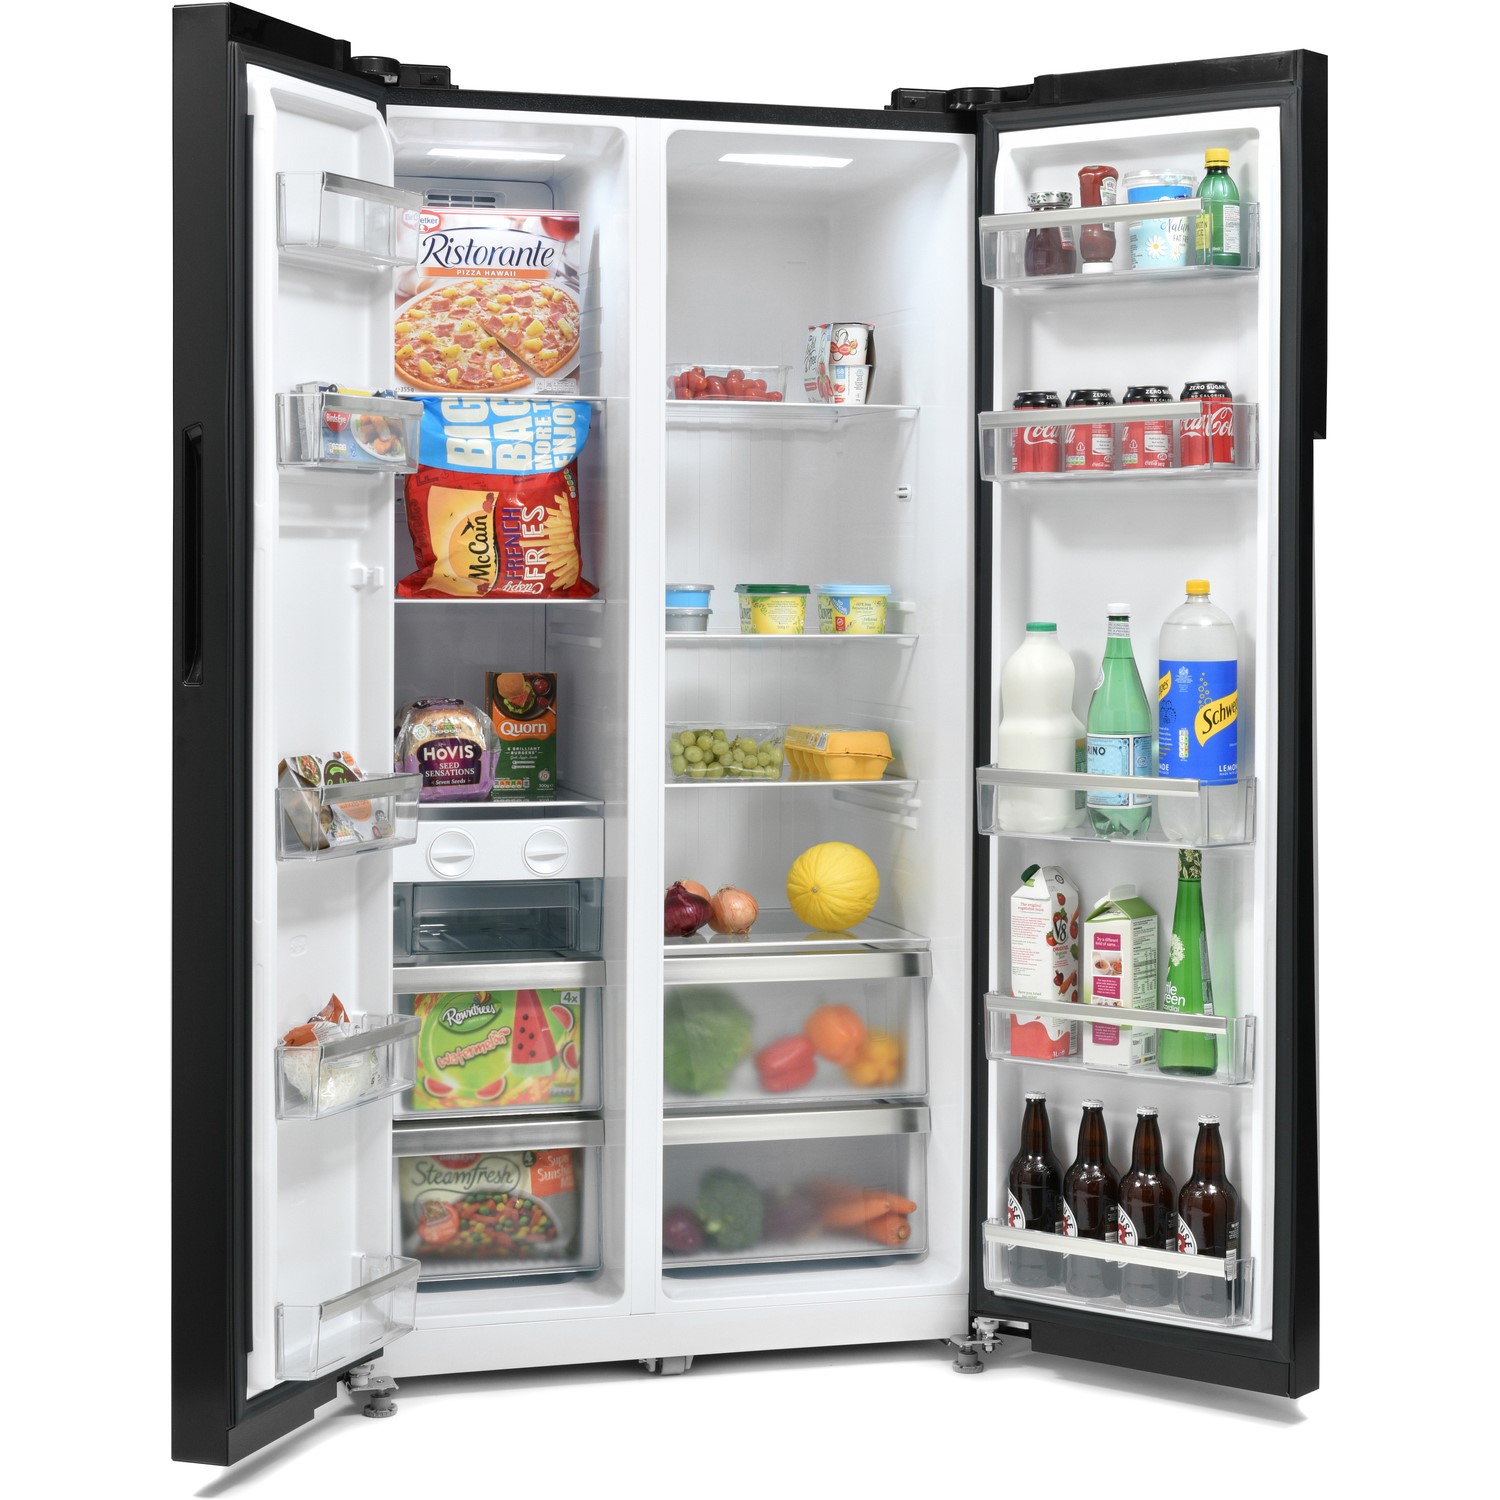 40+ Fridge freezer for sale kettering ideas in 2021 